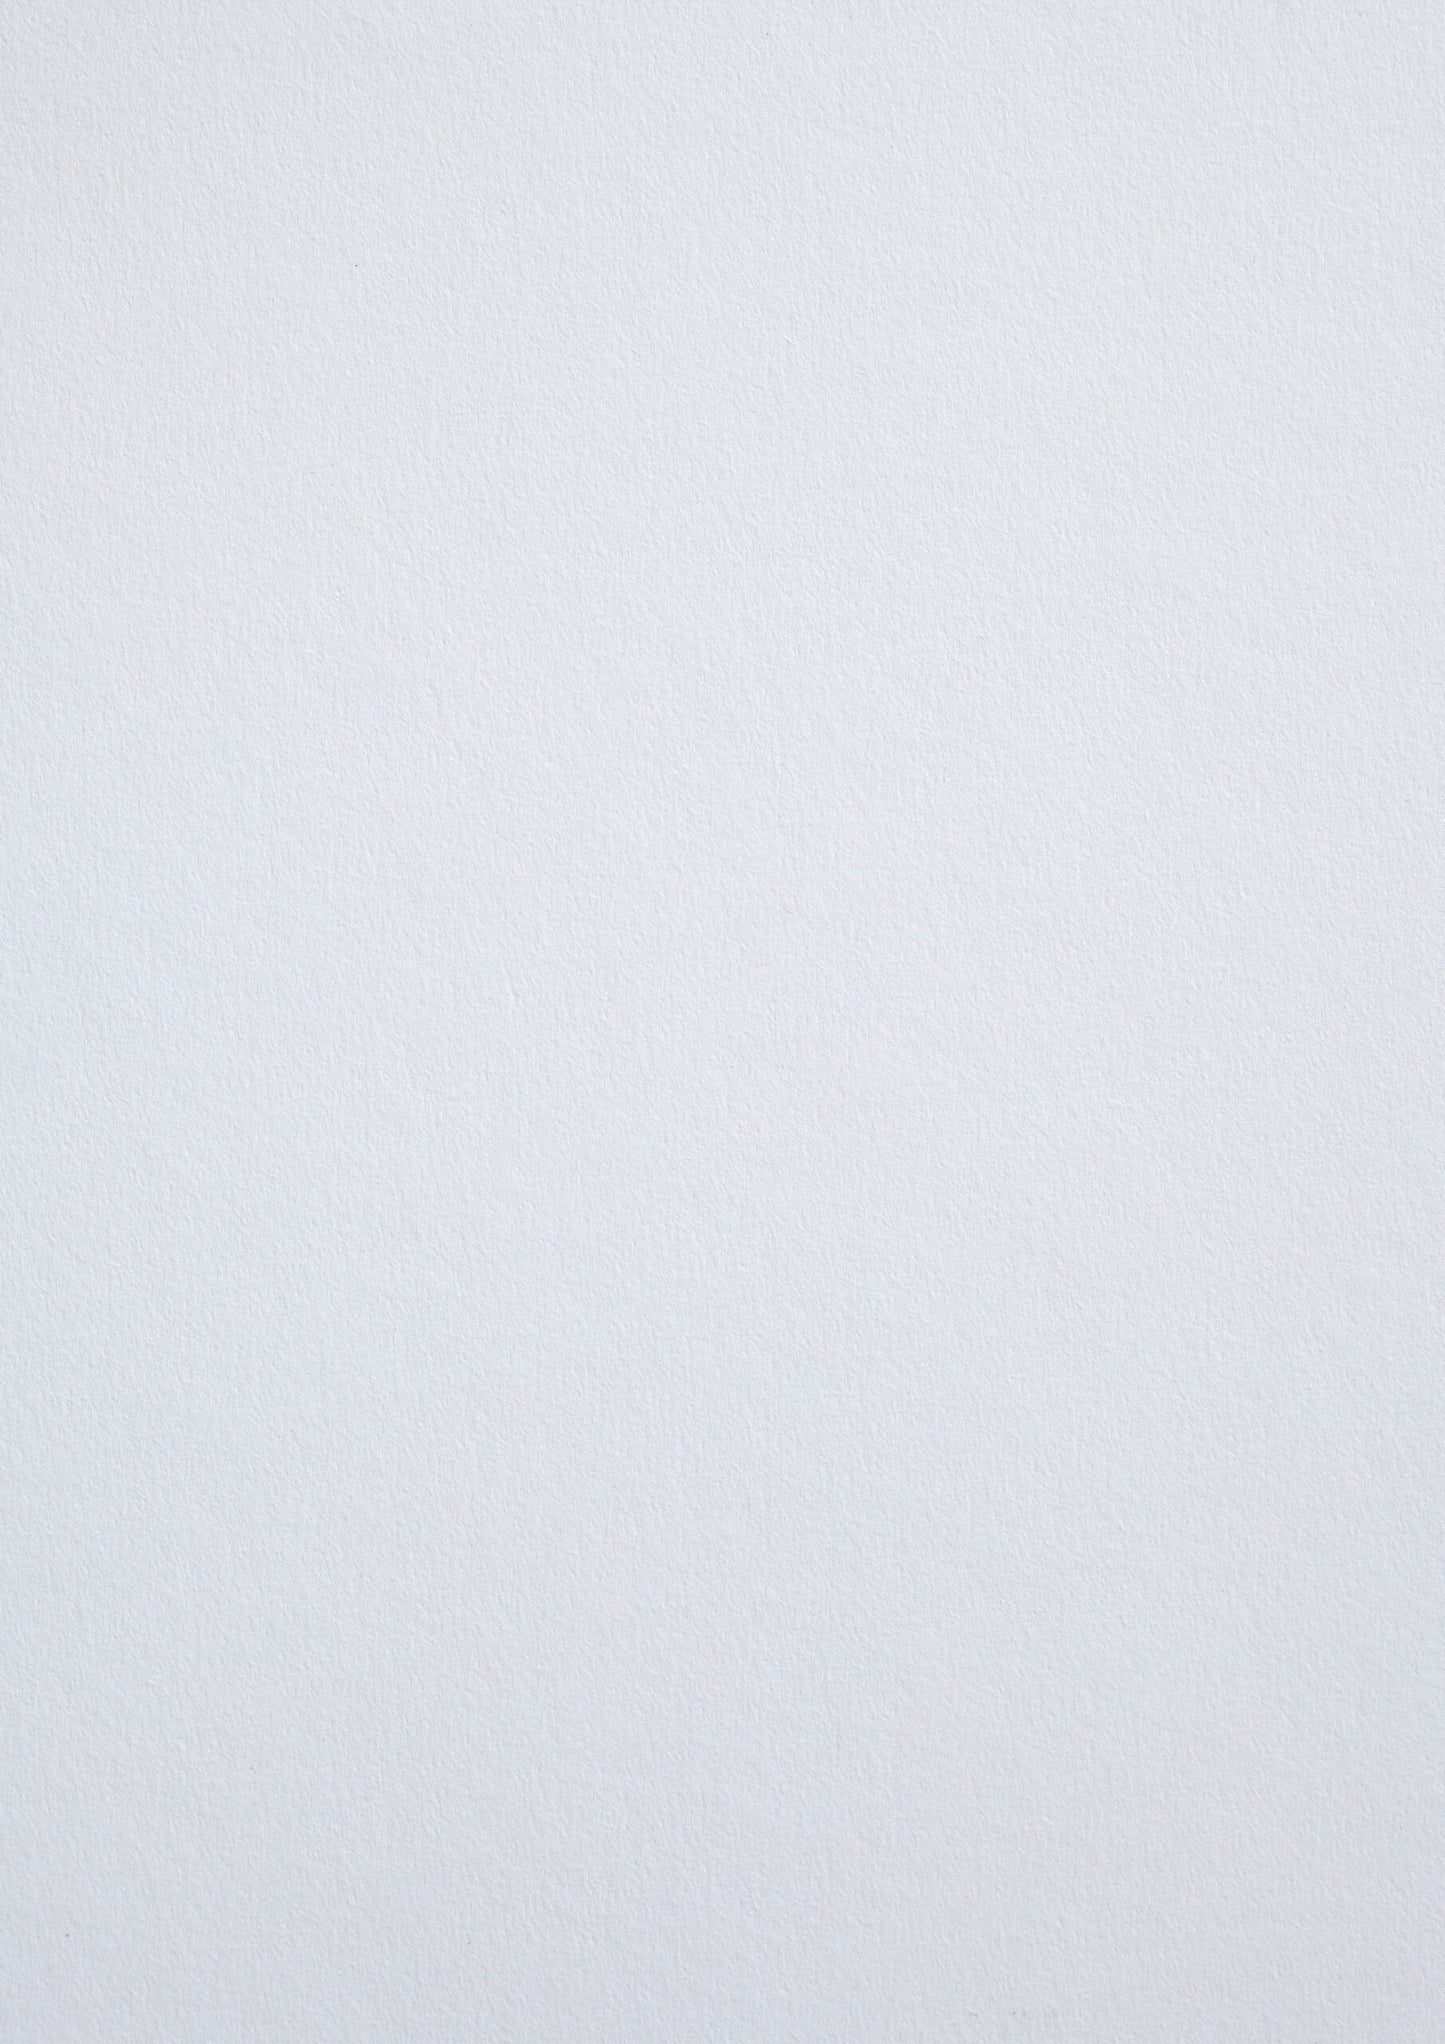 Tört fehér, pamut művészpapír - Gesso - 250 g/m2 - A4